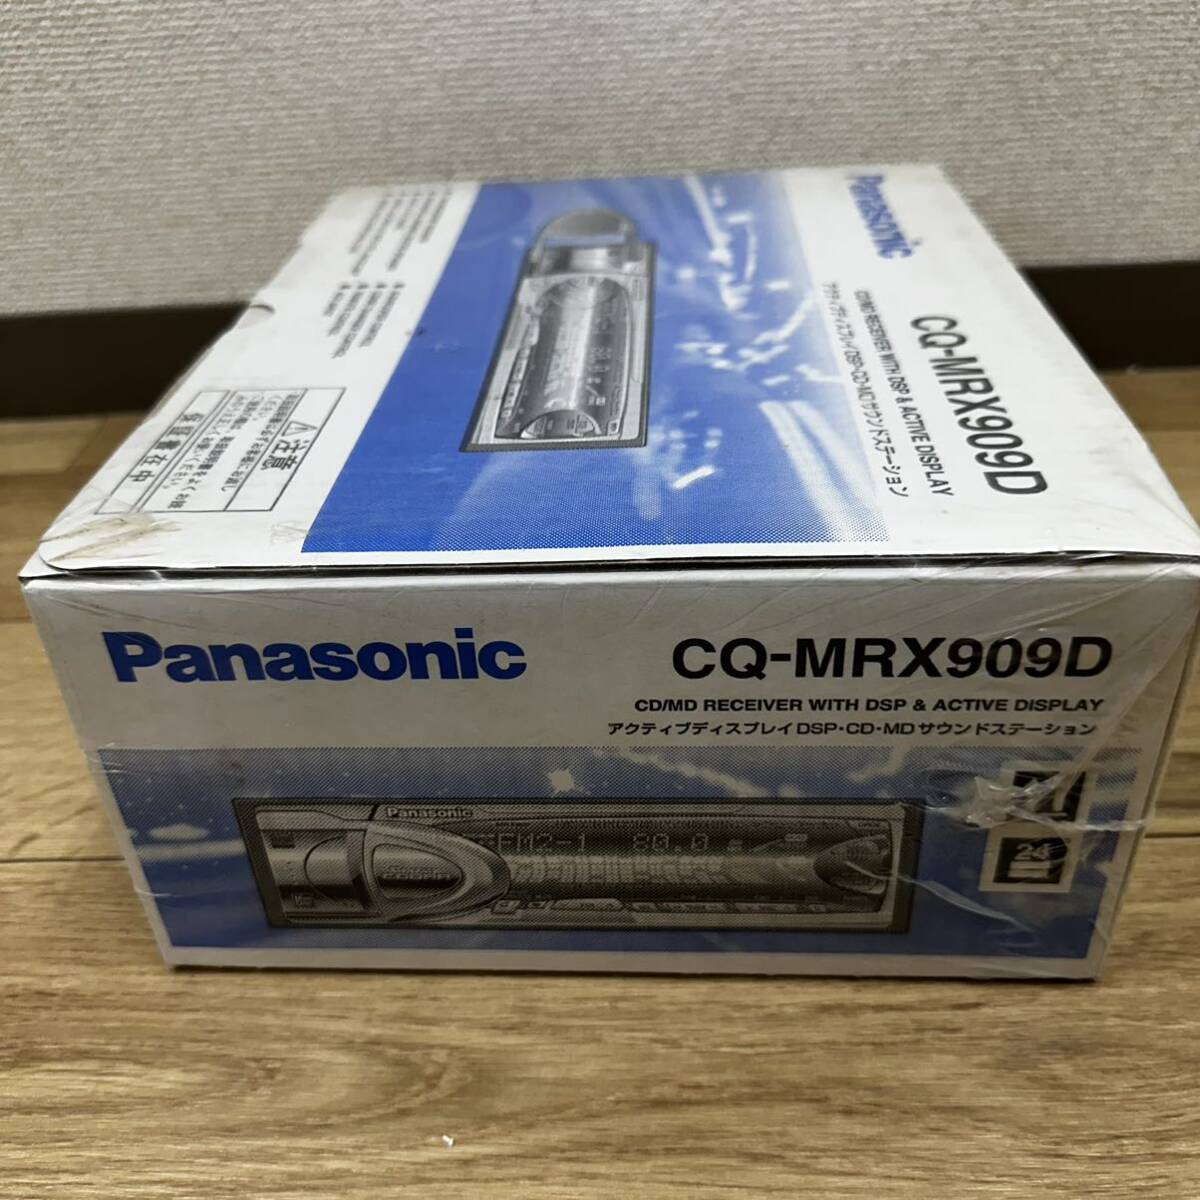 【奇跡の未開封品】Panasonic CQ-MRX909D クレイジーコブラ アクティブディスプレイ DSP・CD・MD サウンドステーション シュリンク未開封の画像3